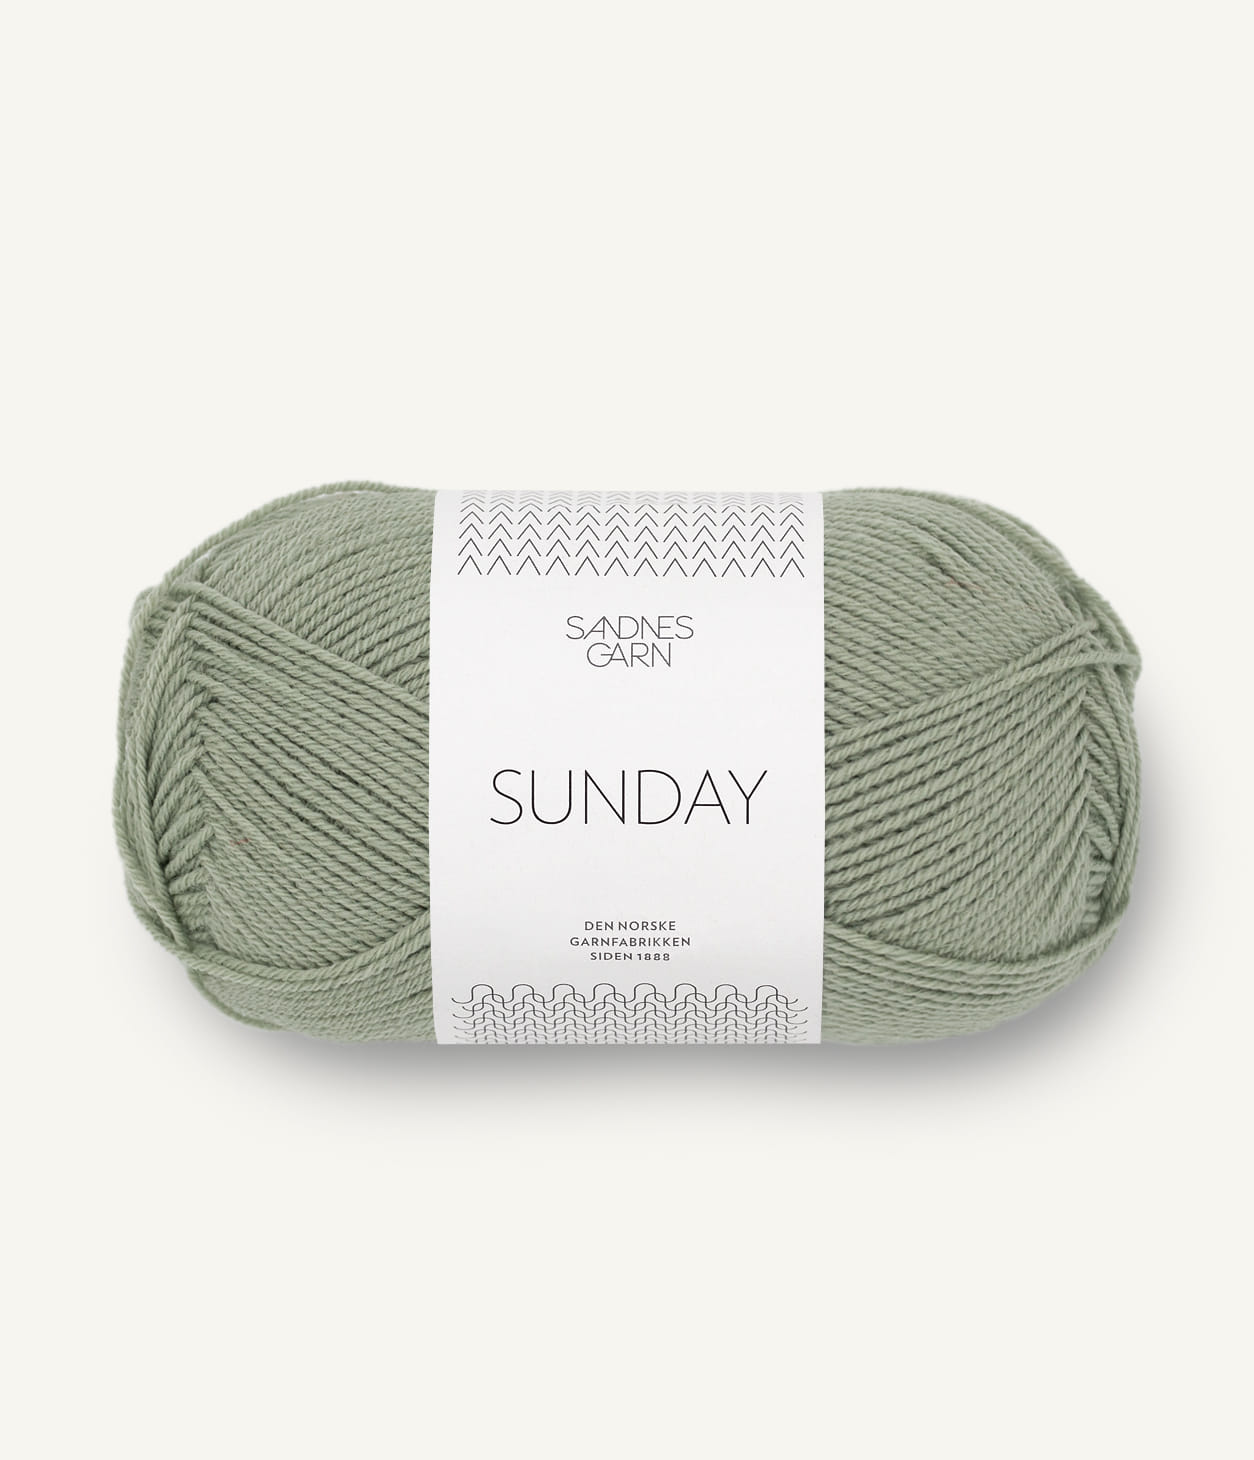 Kuvassa on Sandnes Garn Sunday lanka (yarn) värissä Lys Gronn.